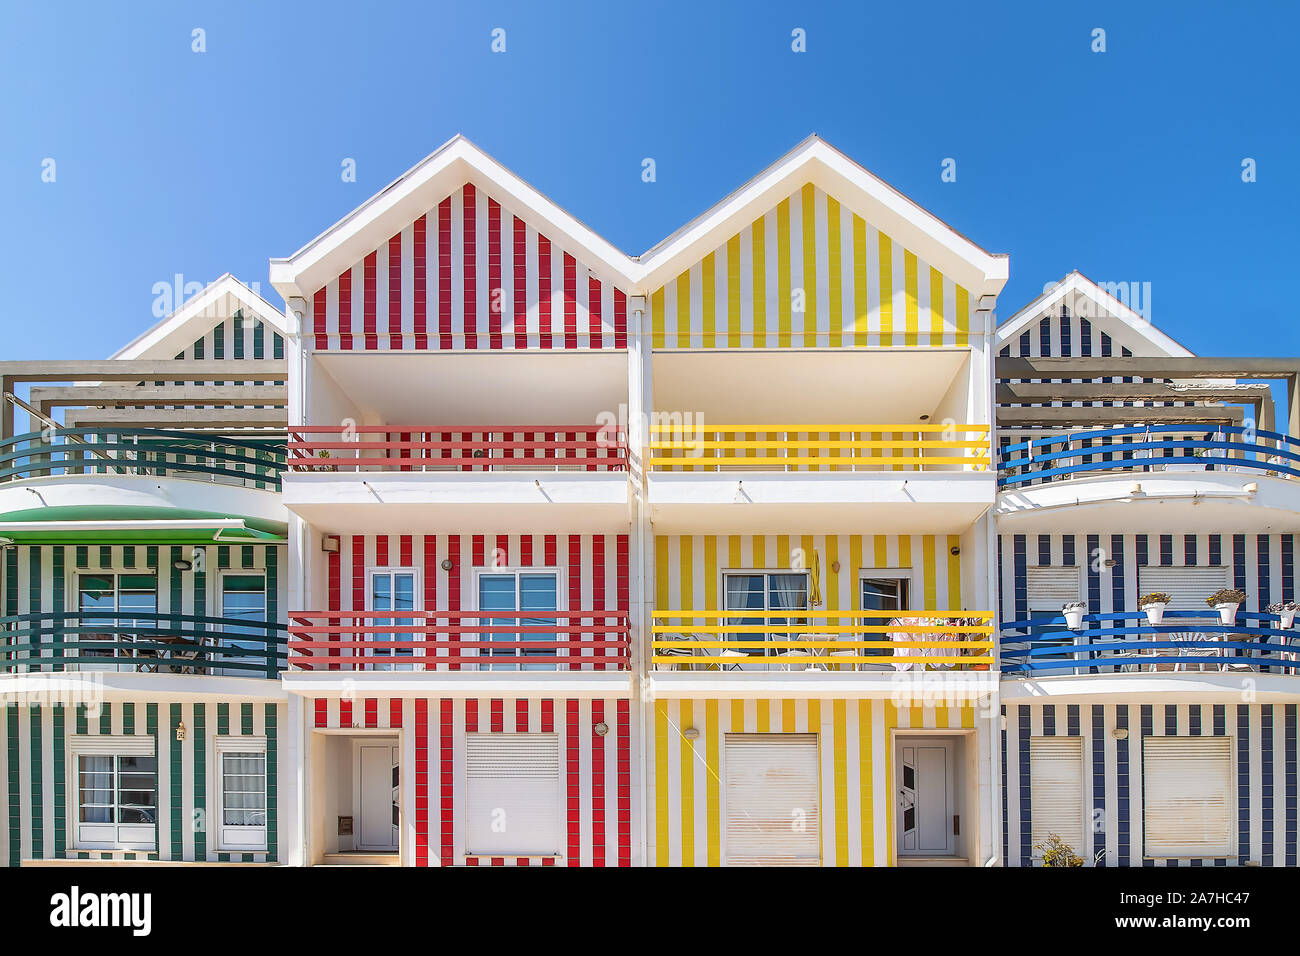 Rue avec ses maisons colorées à Costa Nova, Aveiro, Portugal. Rue avec maisons à rayures, Costa Nova, Aveiro, Portugal. Façades de maisons colorées en C Banque D'Images